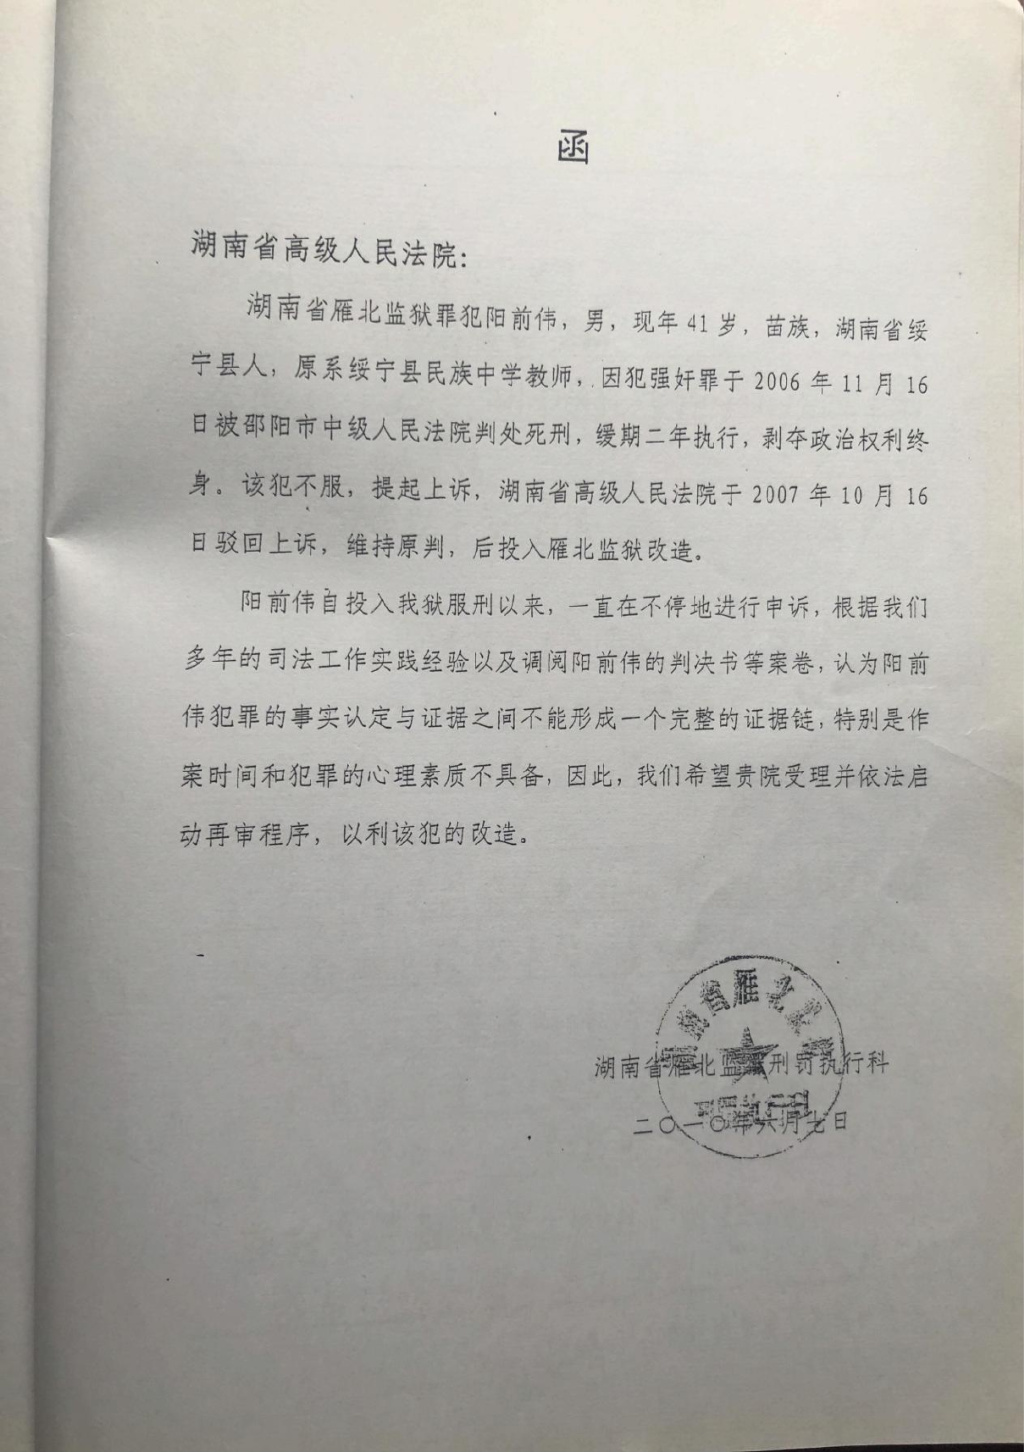 广东湛江27年前杀人案告破之后： 受害者家属报请最高检核准 对凶手行为进行追诉 - 封面新闻